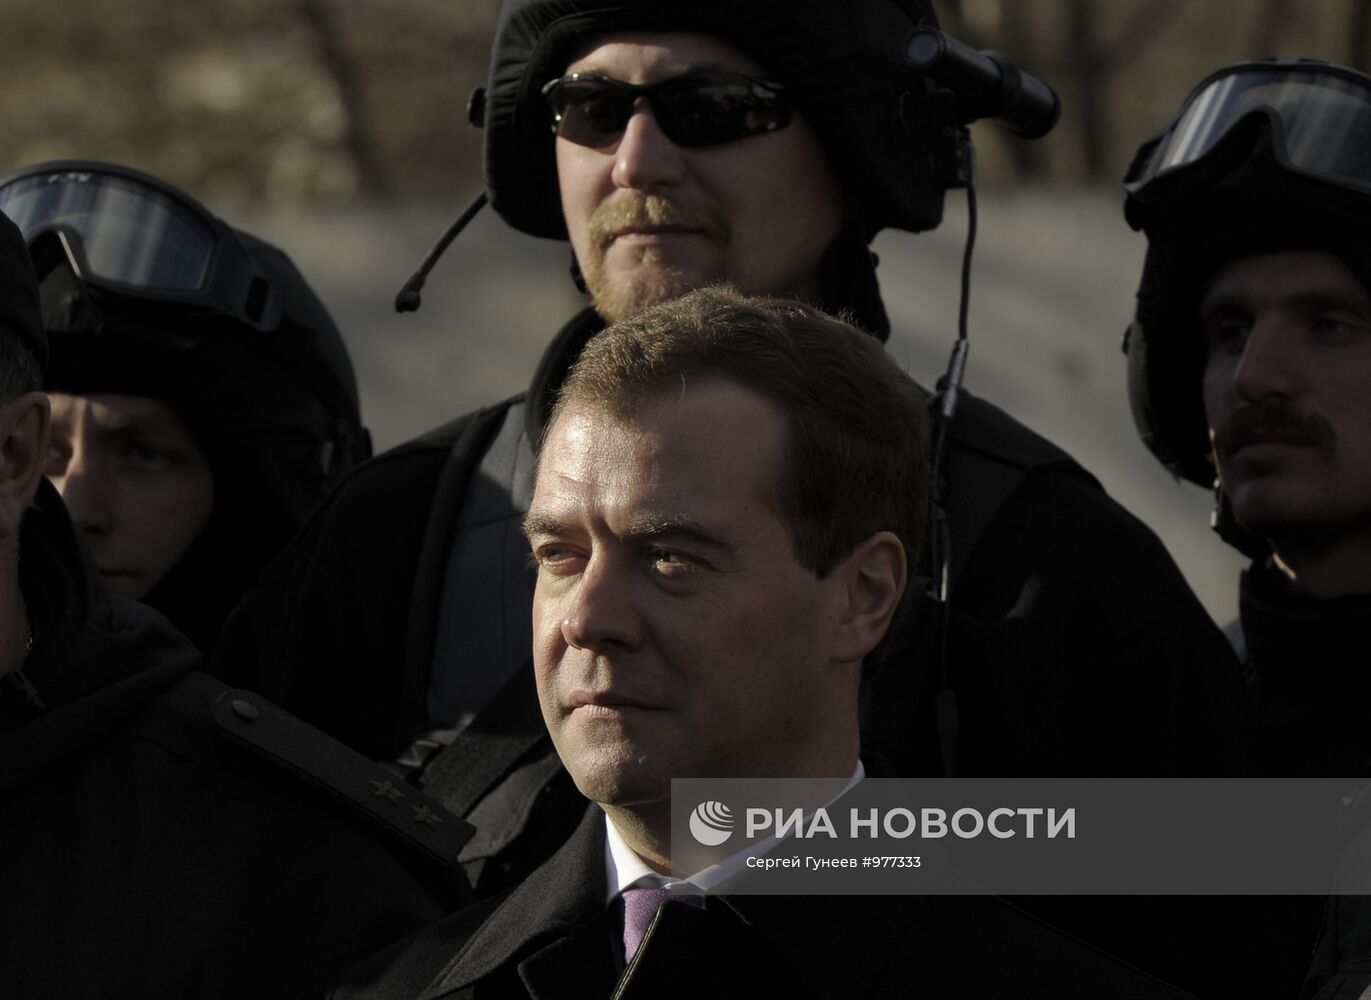 Рабочая поездка Д.Медведева в Тверскую область